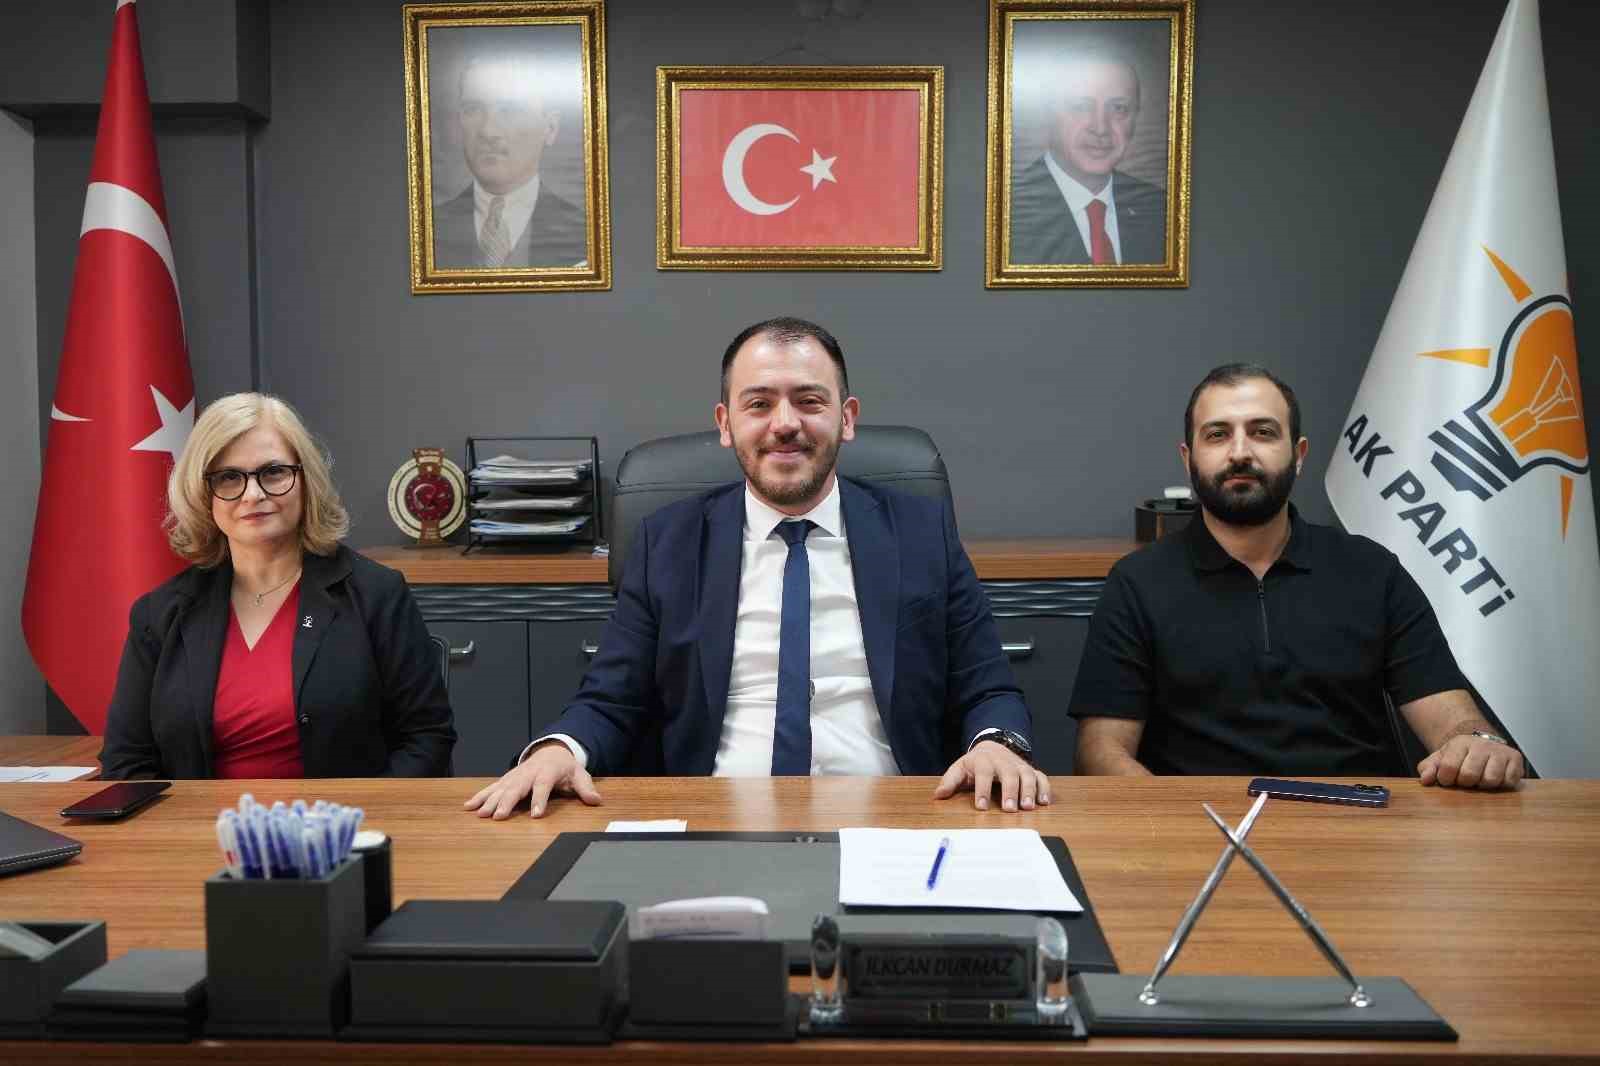 AK Parti Yunusemre İlçe Başkanı Durmaz’dan CHP’li belediyelere eleştiri
